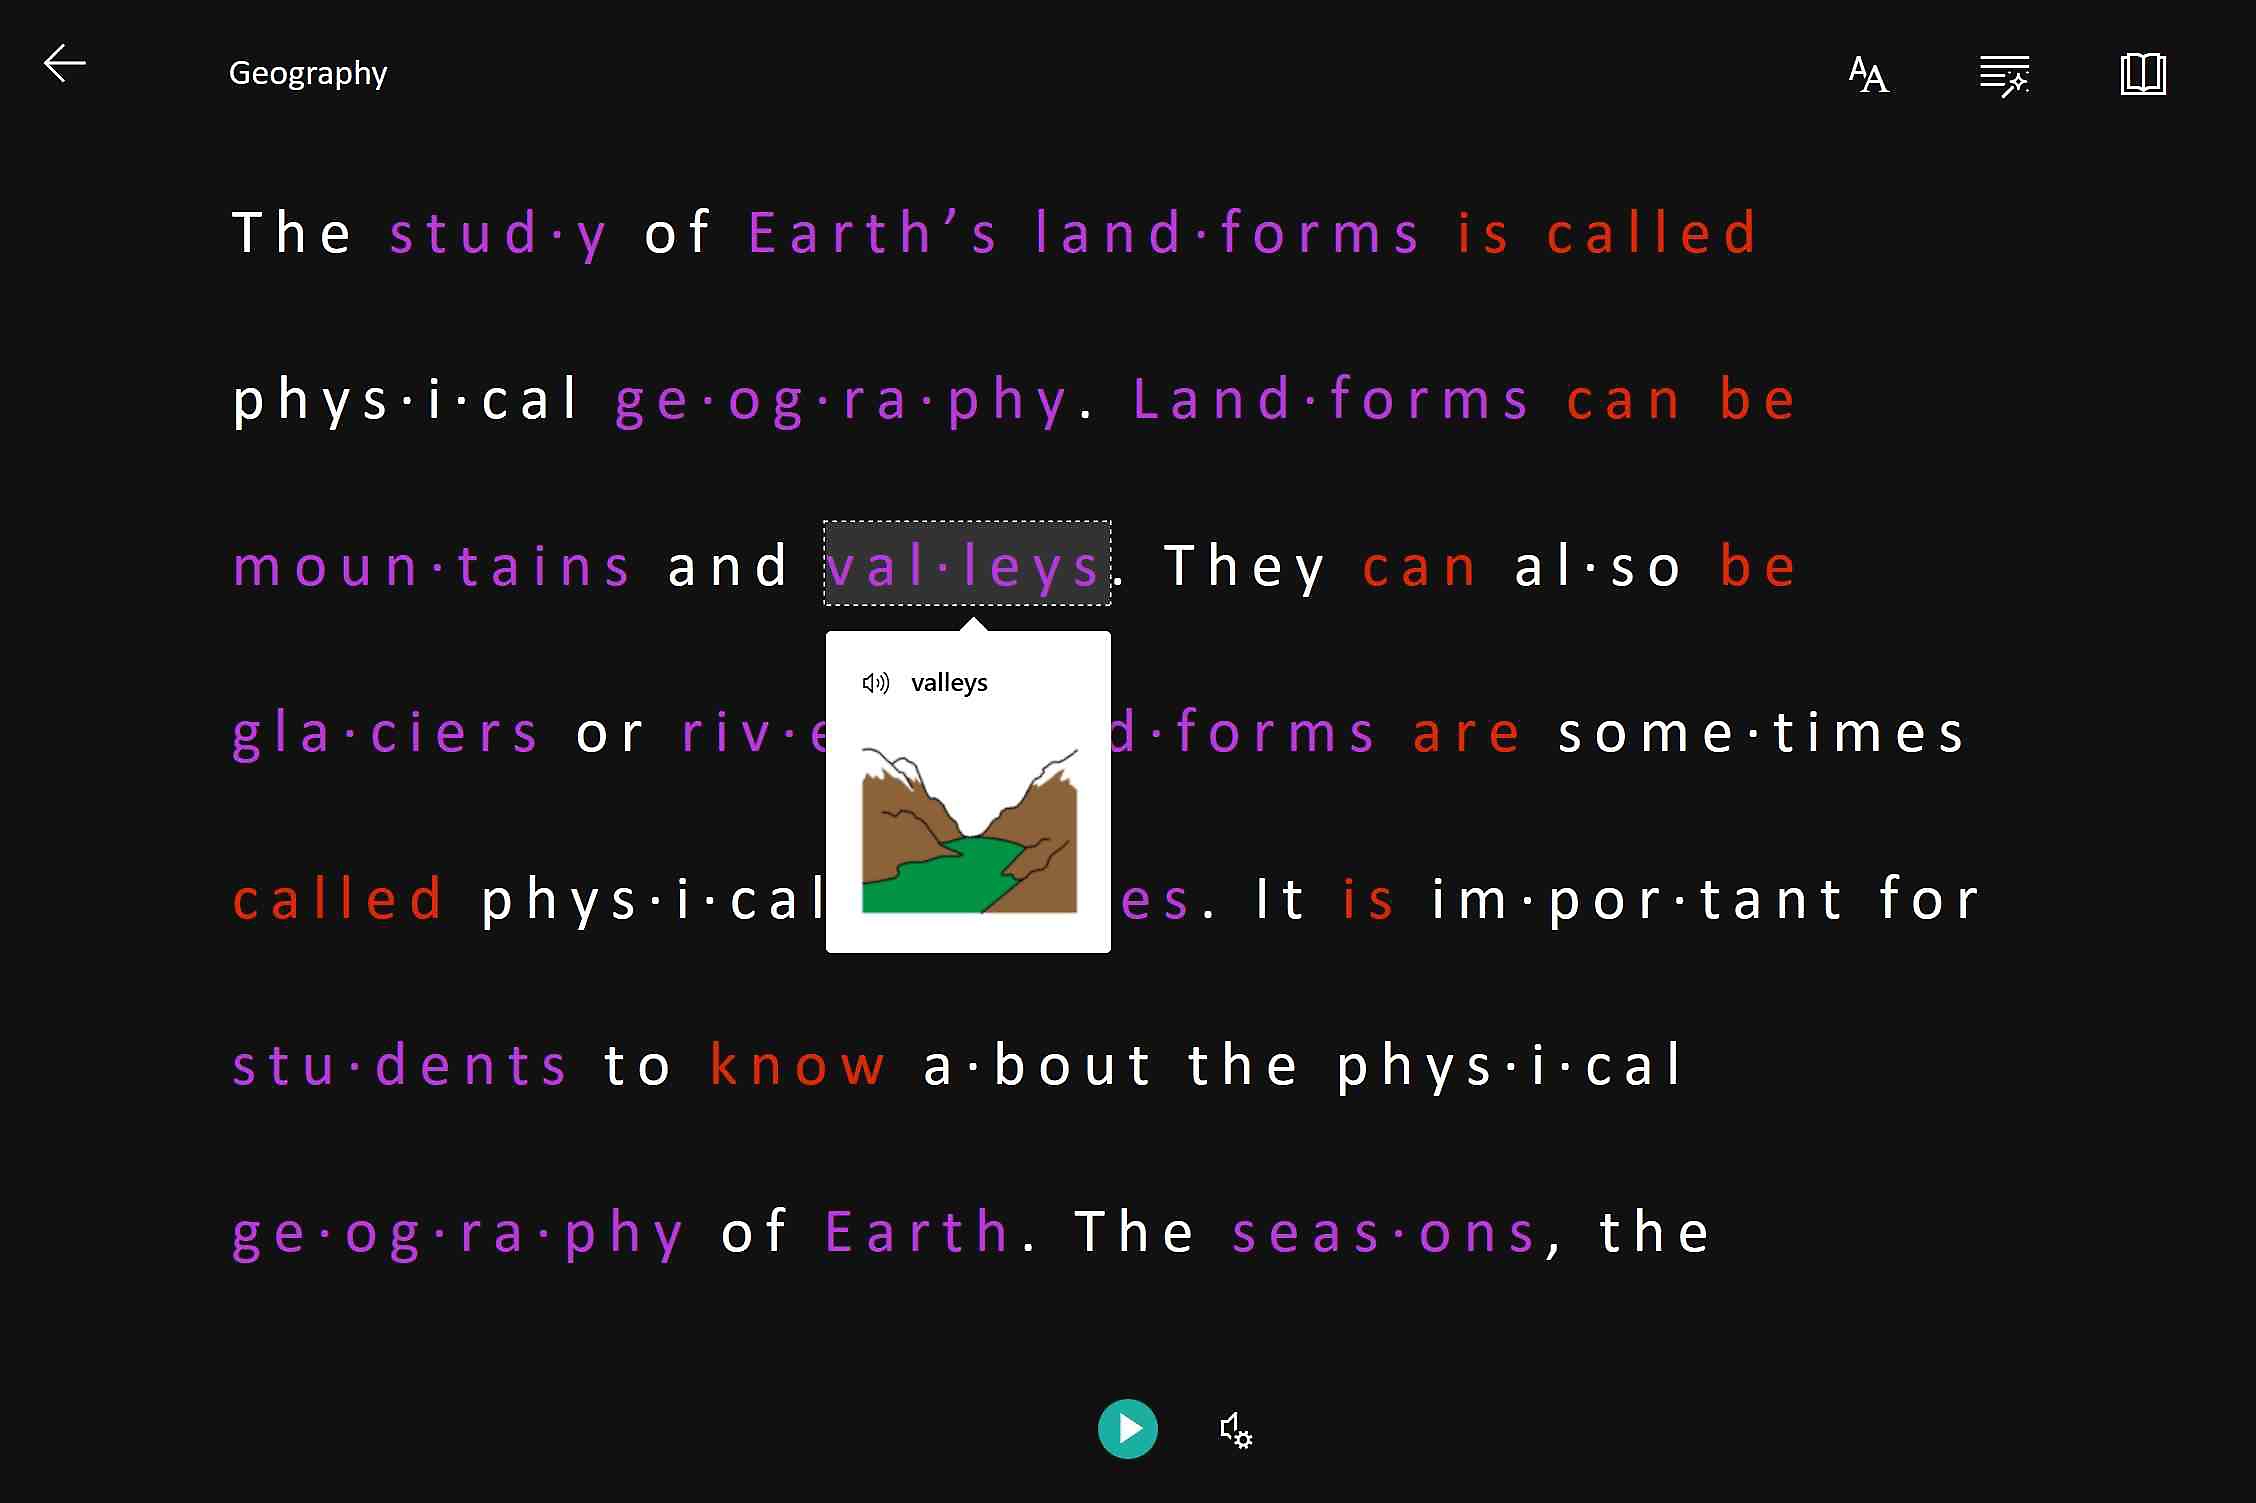 沈浸式閱讀程式強調、發音並顯示 Valleys 這個字的影像